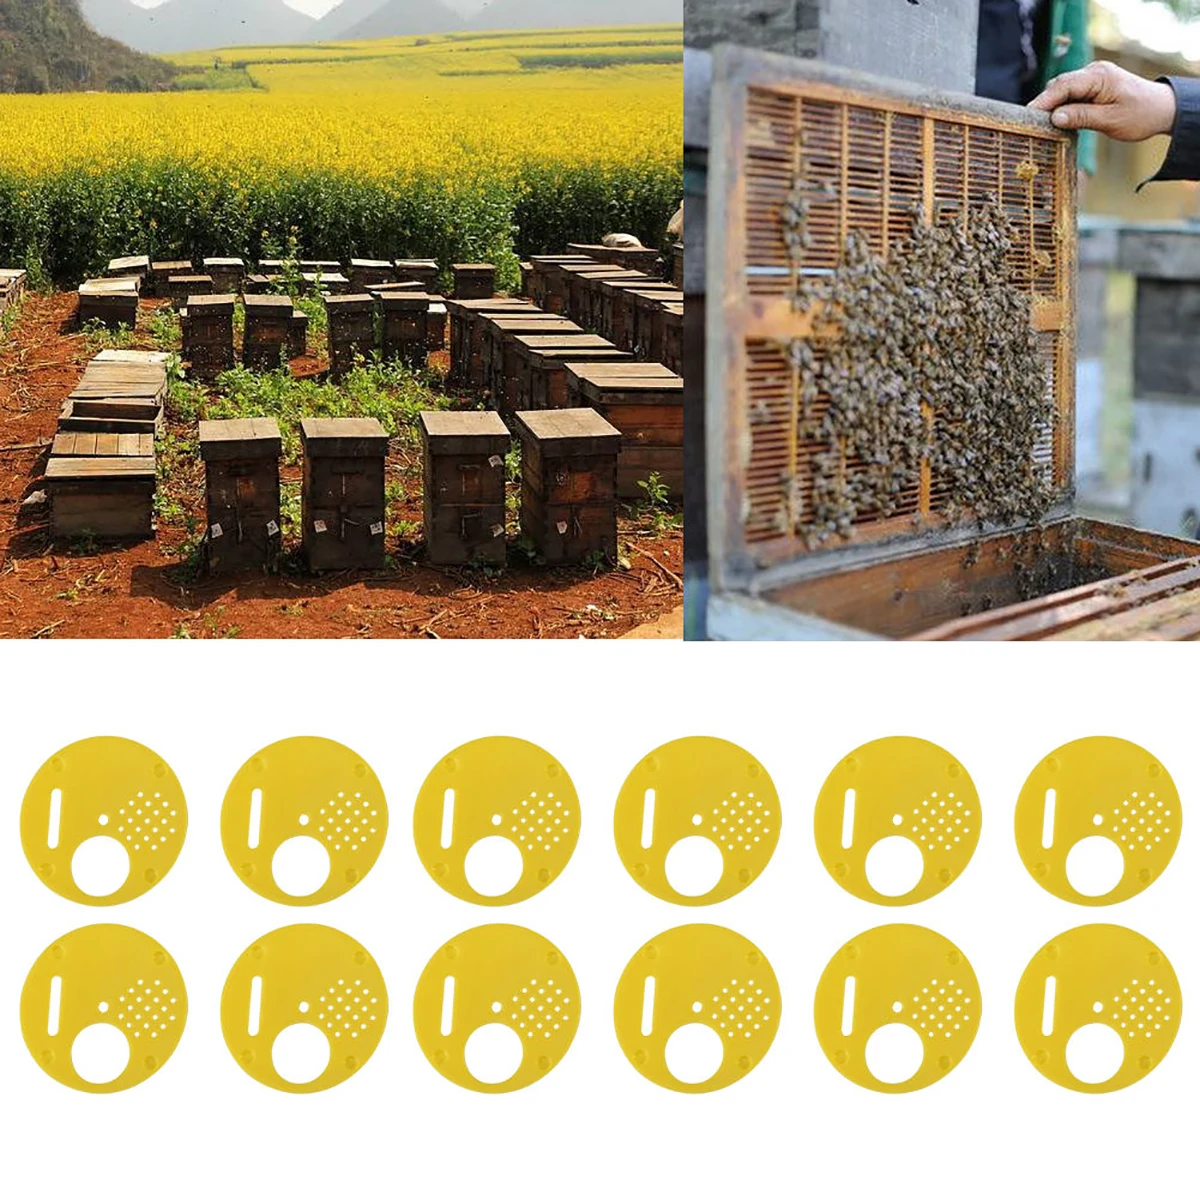 12 шт./лот новые желтые пчеловоды пчелиный улей Nuc коробка входные ворота оборудование для пчеловодства